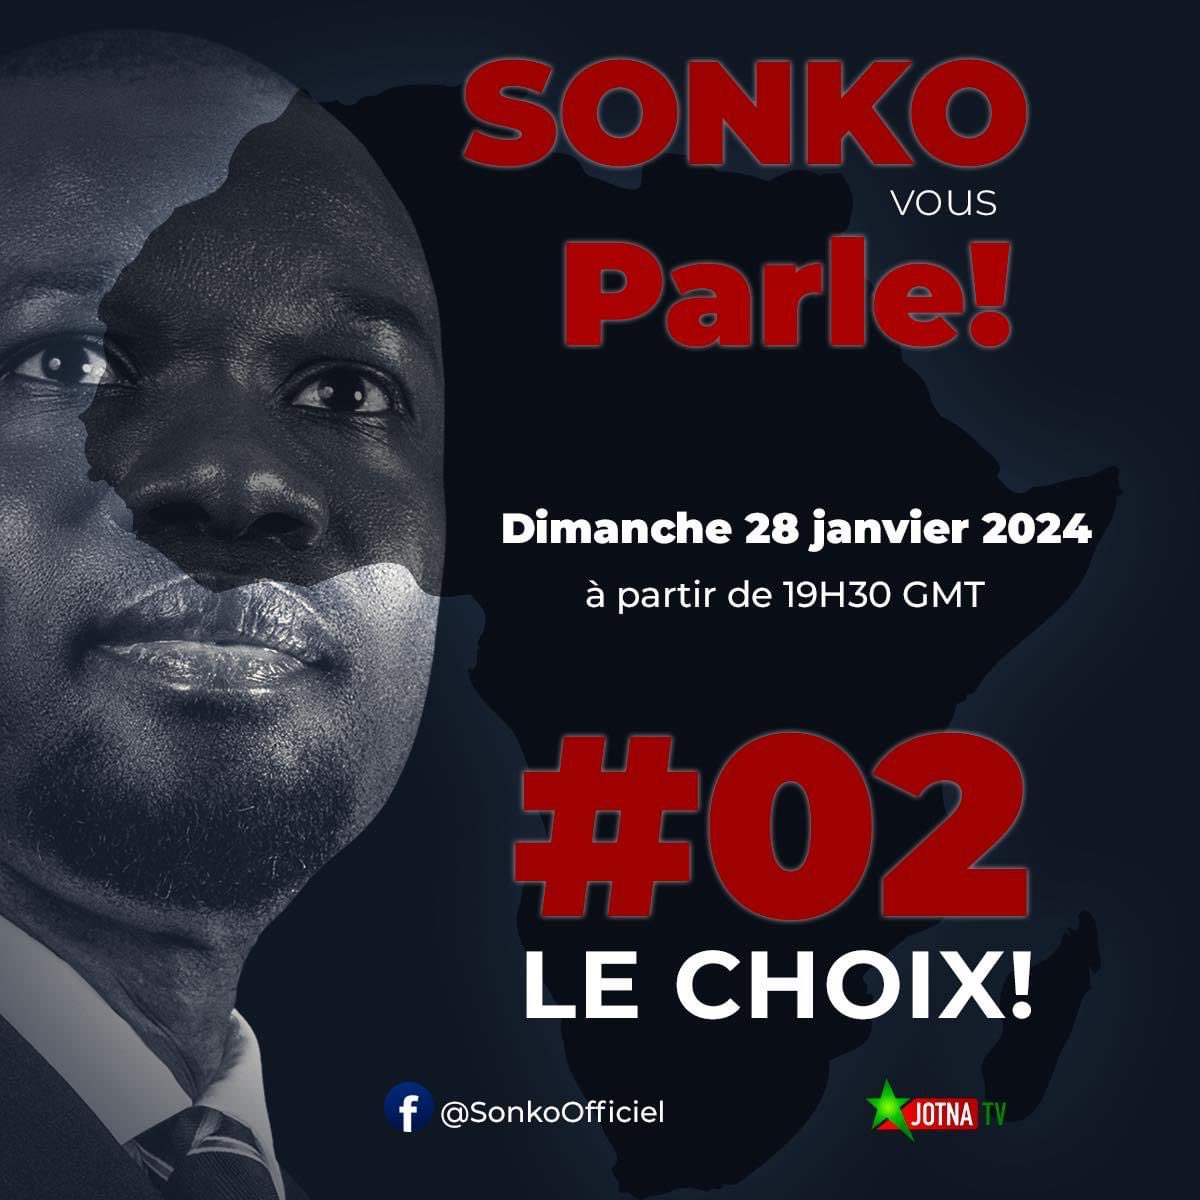 DÉCLARATION DU PRÉSIDENT OUSMANE SONKO 
#SonkoVousParle
#02LeChoix 
#Focus2024